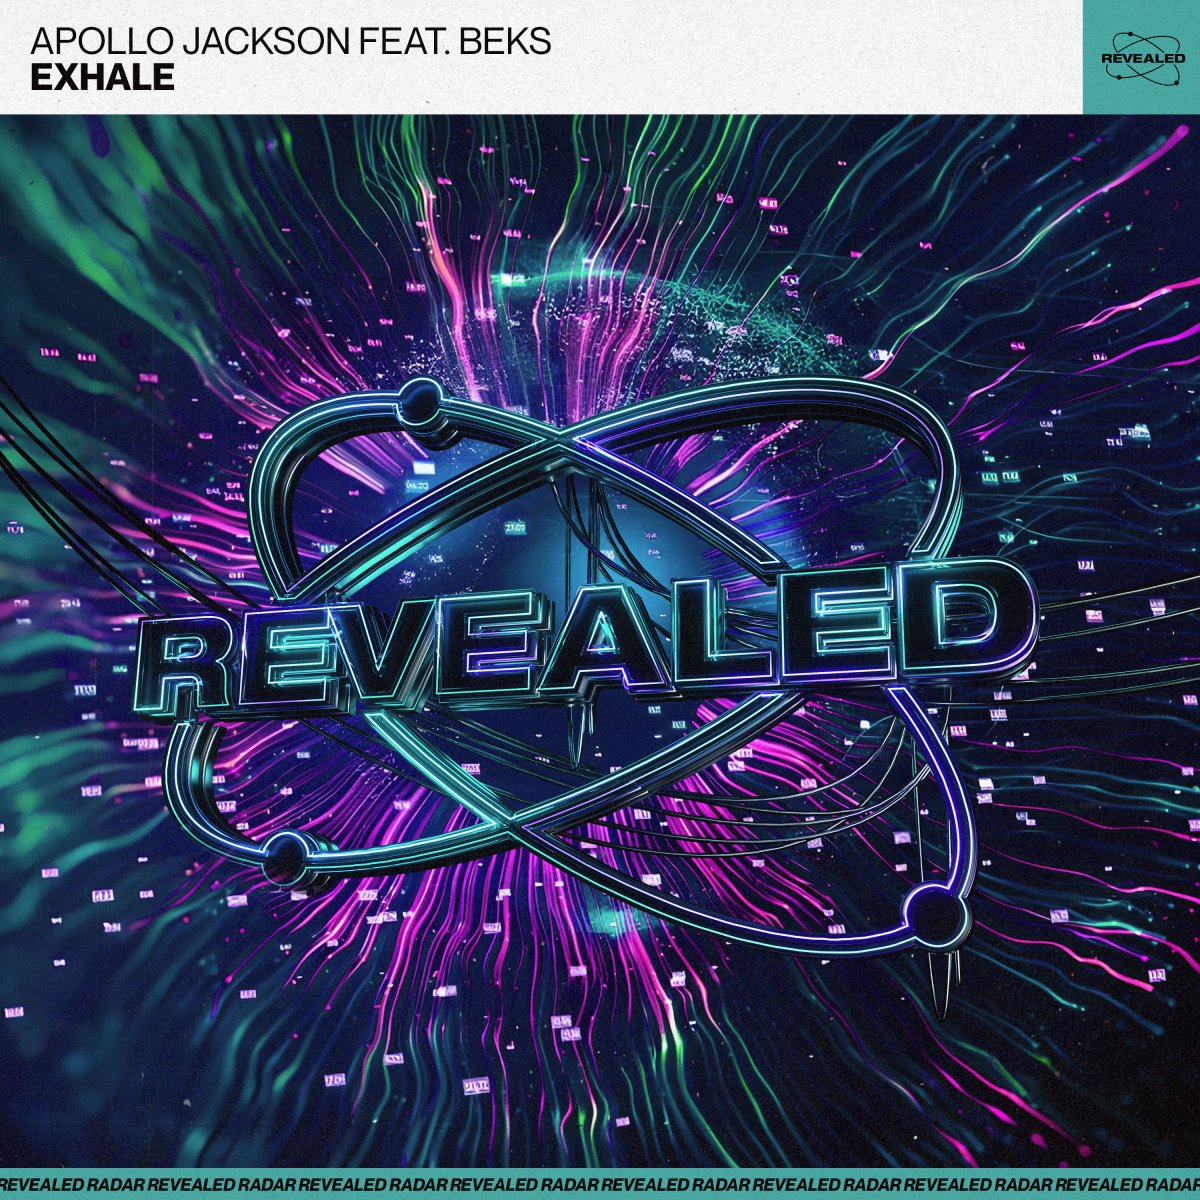 Exhale - Apollo Jackson⁠ feat. Beks ⁠ 